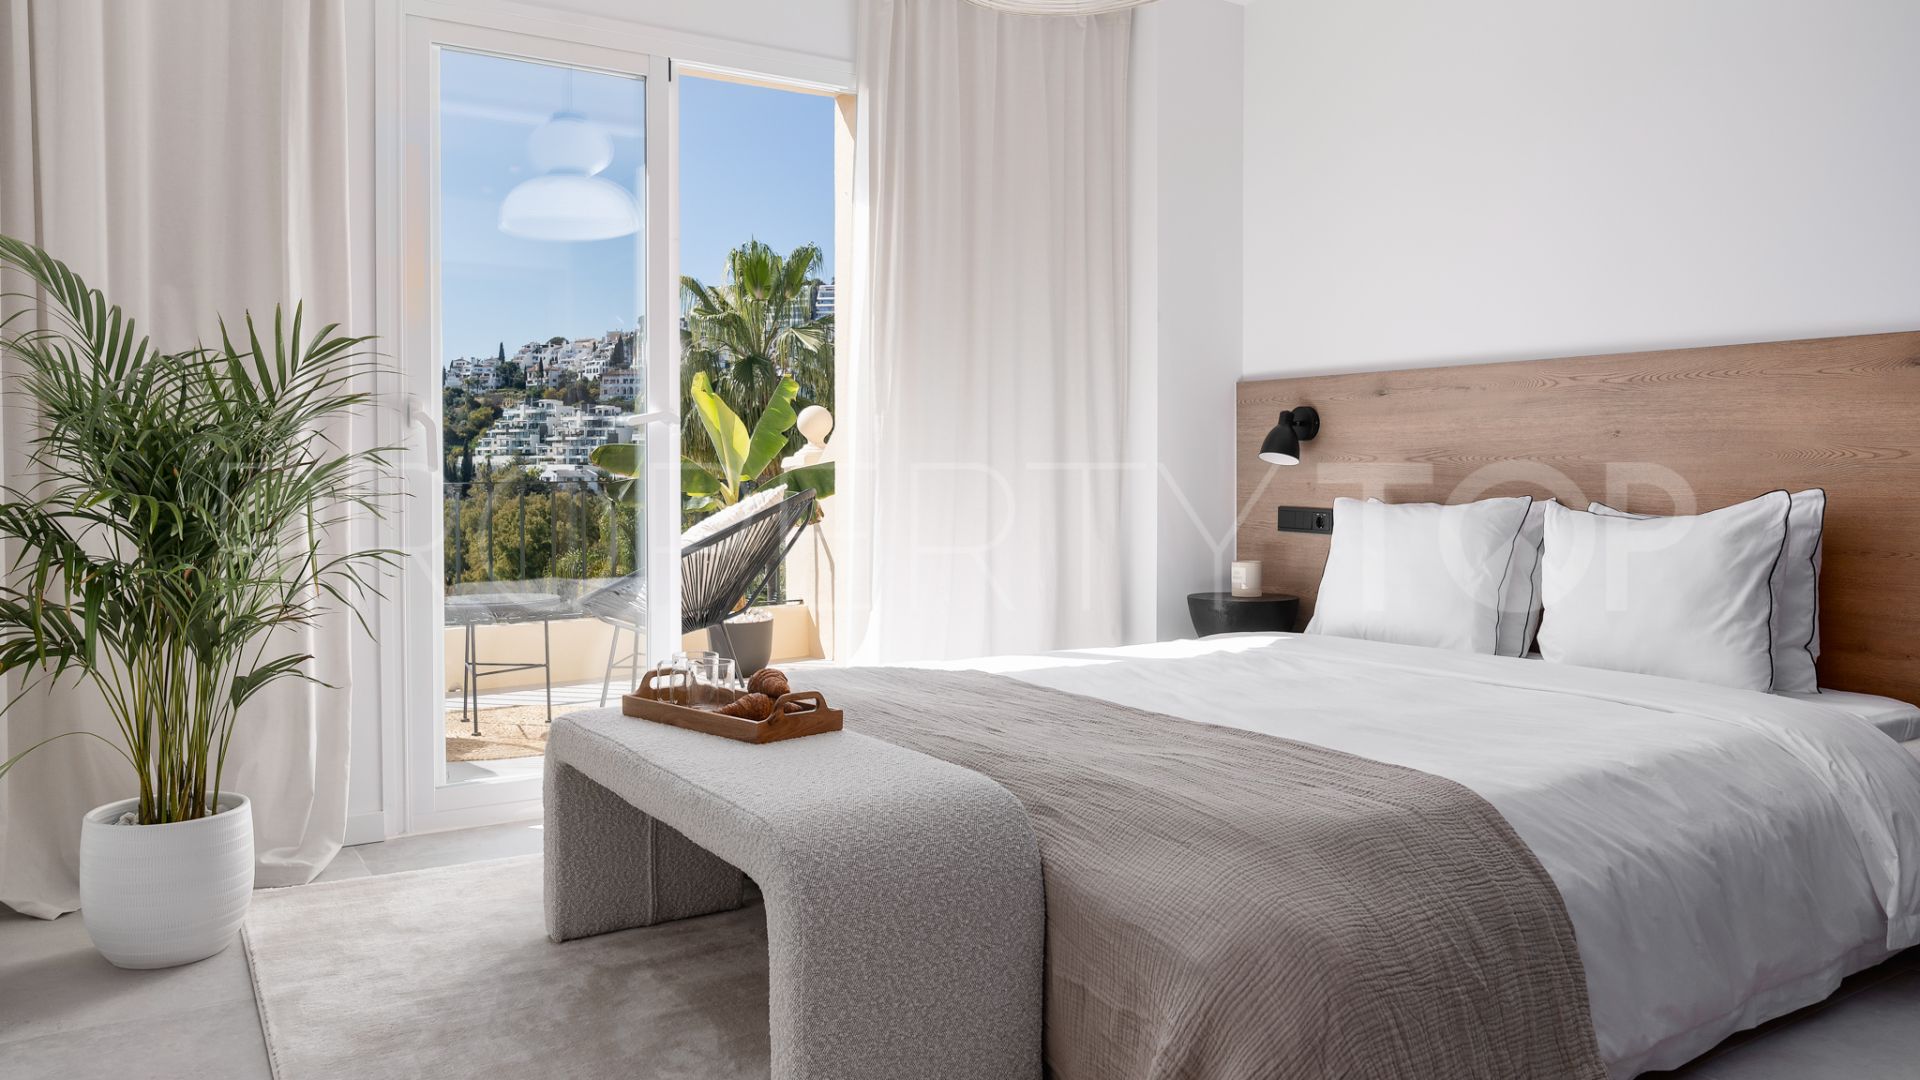 For sale La Quinta Hills duplex penthouse with 3 bedrooms